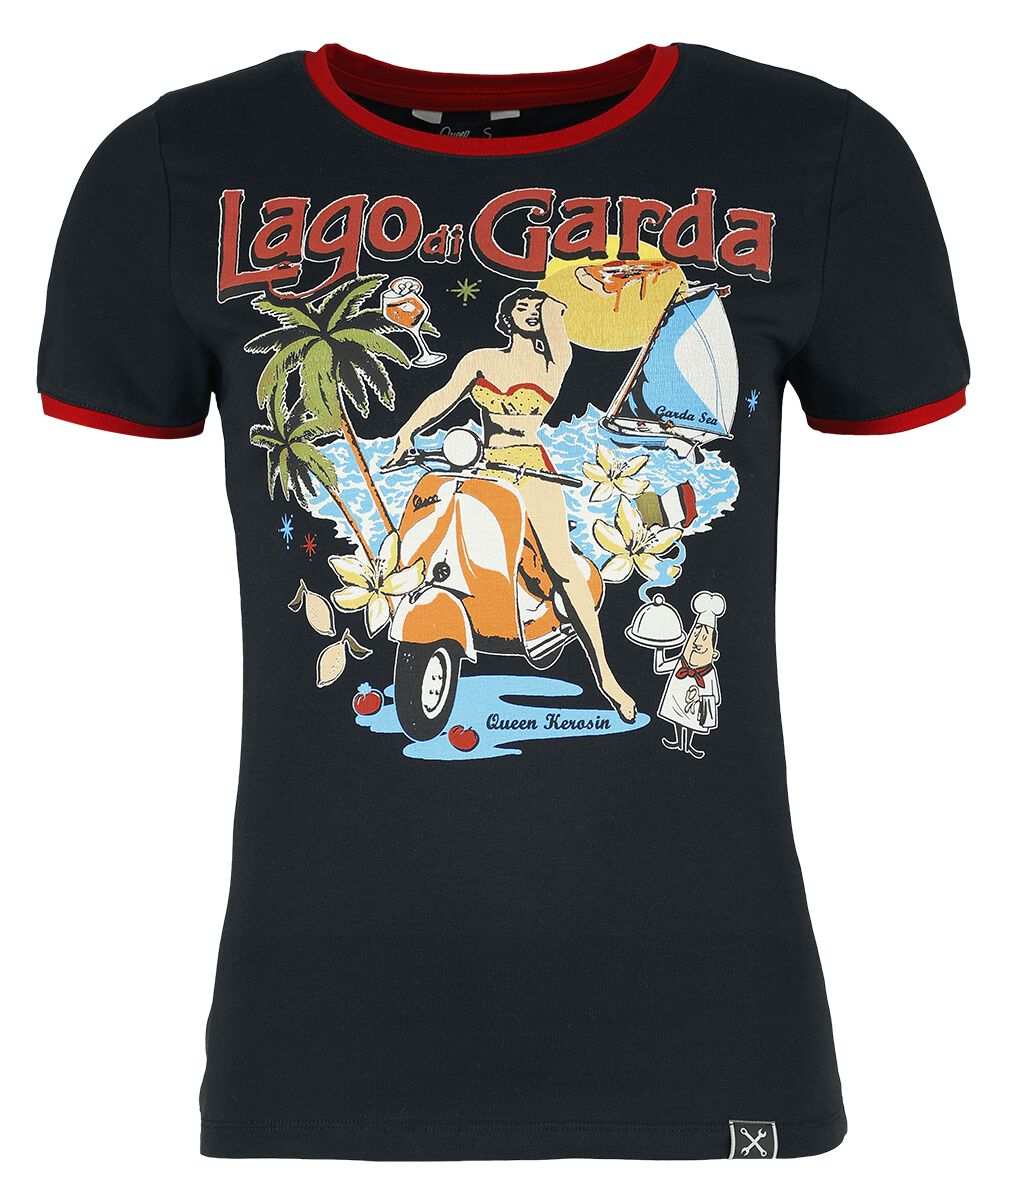 Queen Kerosin - Rockabilly T-Shirt - Lago Di Garda - XS bis 4XL - für Damen - Größe XXL - schwarz/rot